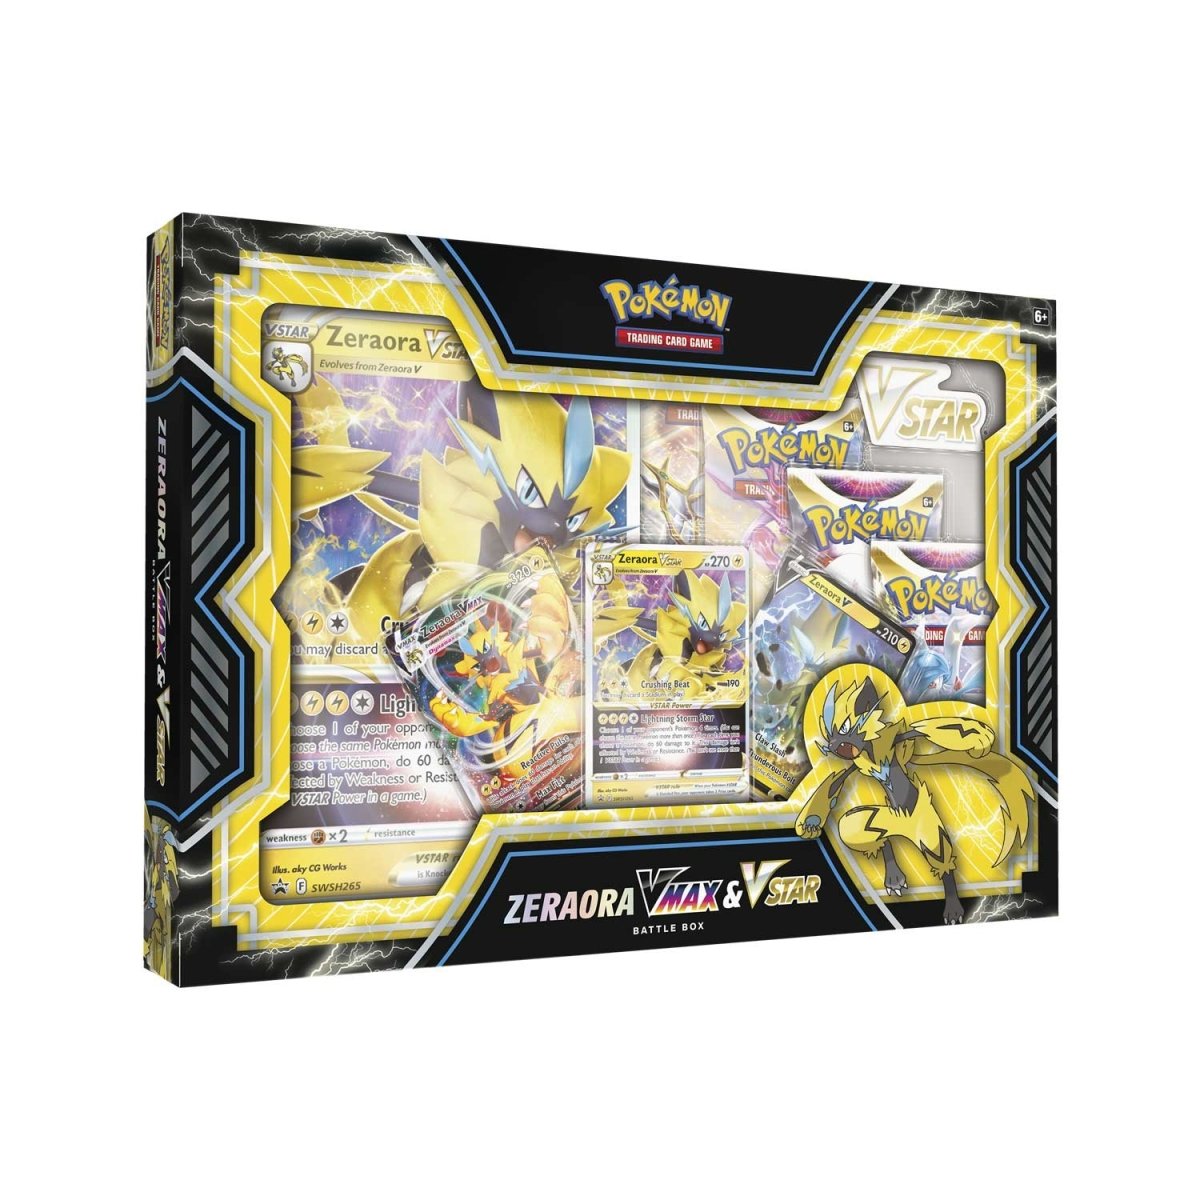 Pokemon Zeraora Vmax and Vstar Collection Box